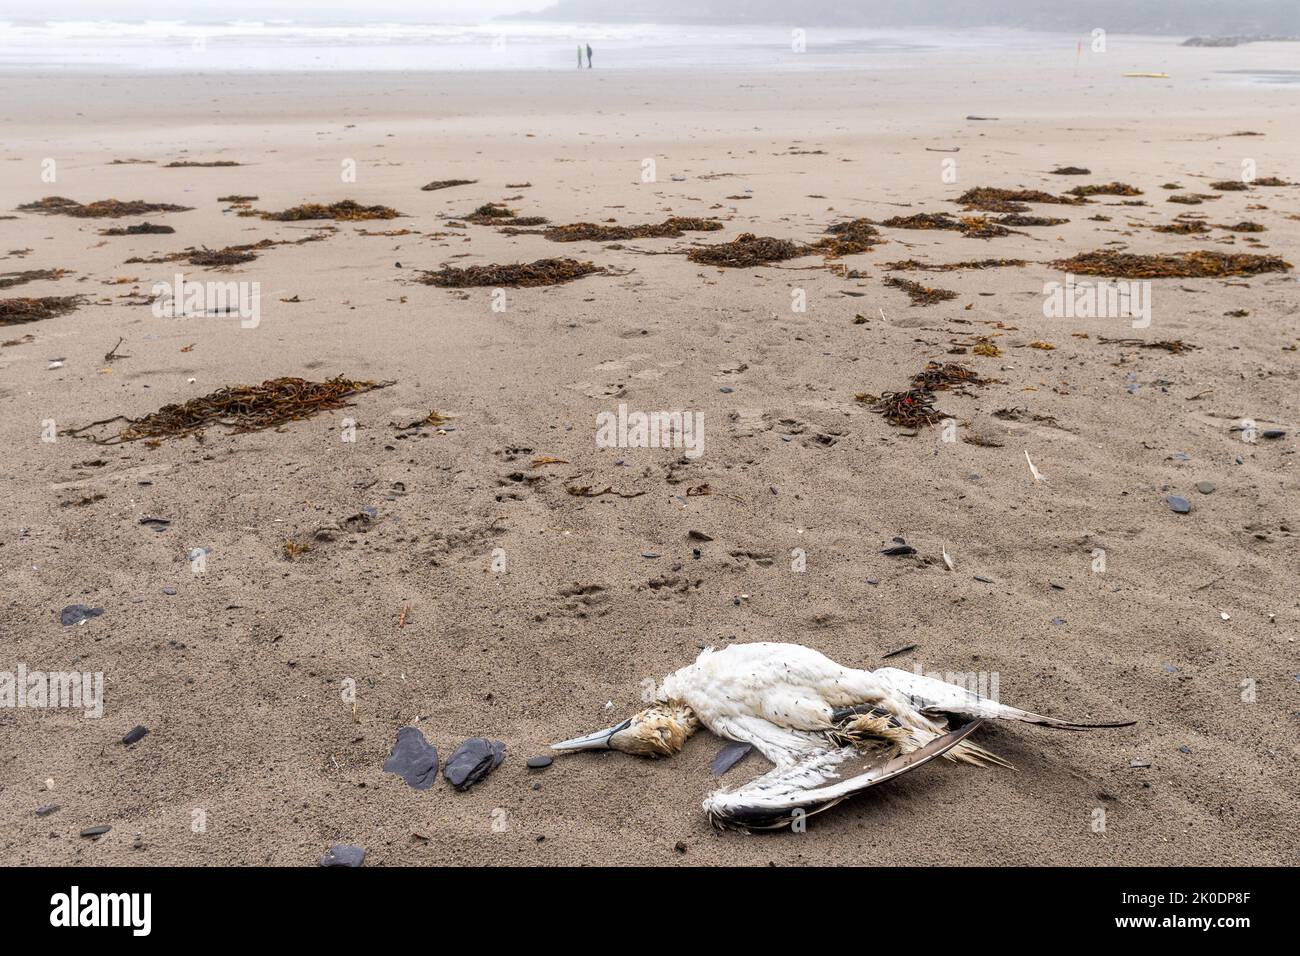 Warren Beach, Rosscarbery, West Cork, Irland. Zwei tote Vögel wurden heute am Warren Beach in West Cork entdeckt, inmitten der aktuellen Angst vor der Vogelgrippe. Quelle: AG News/Alamy Live News Stockfoto